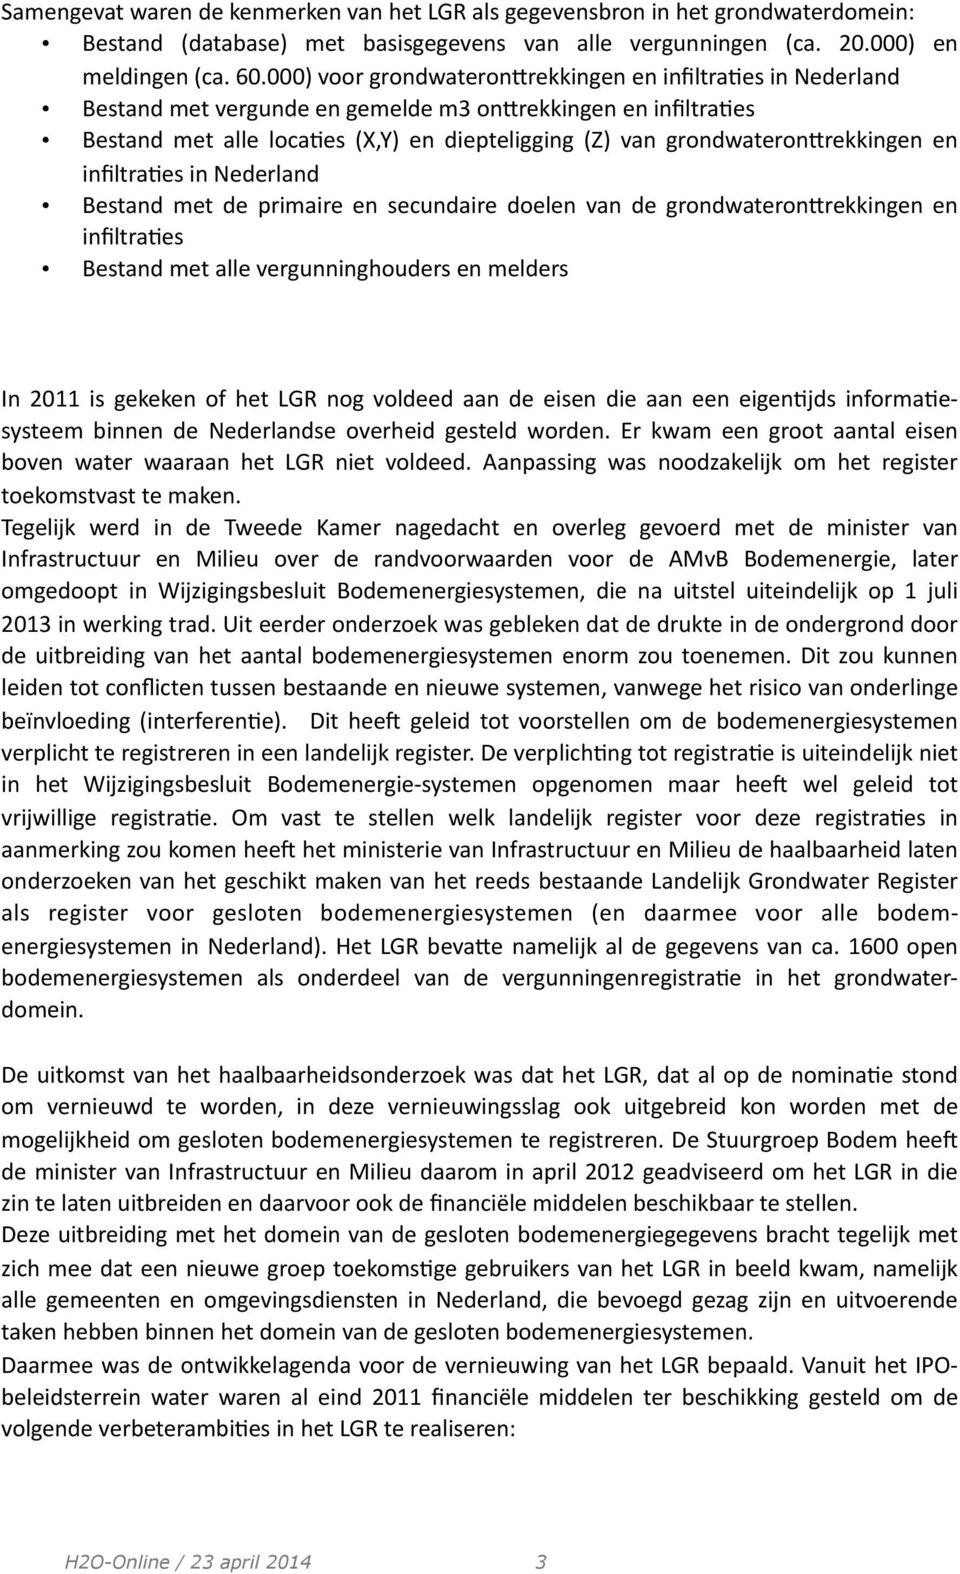 grondwateronrrekkingen en infiltra9es in Nederland Bestand met de primaire en secundaire doelen van de grondwateronrrekkingen en infiltra9es Bestand met alle vergunninghouders en melders In 2011 is